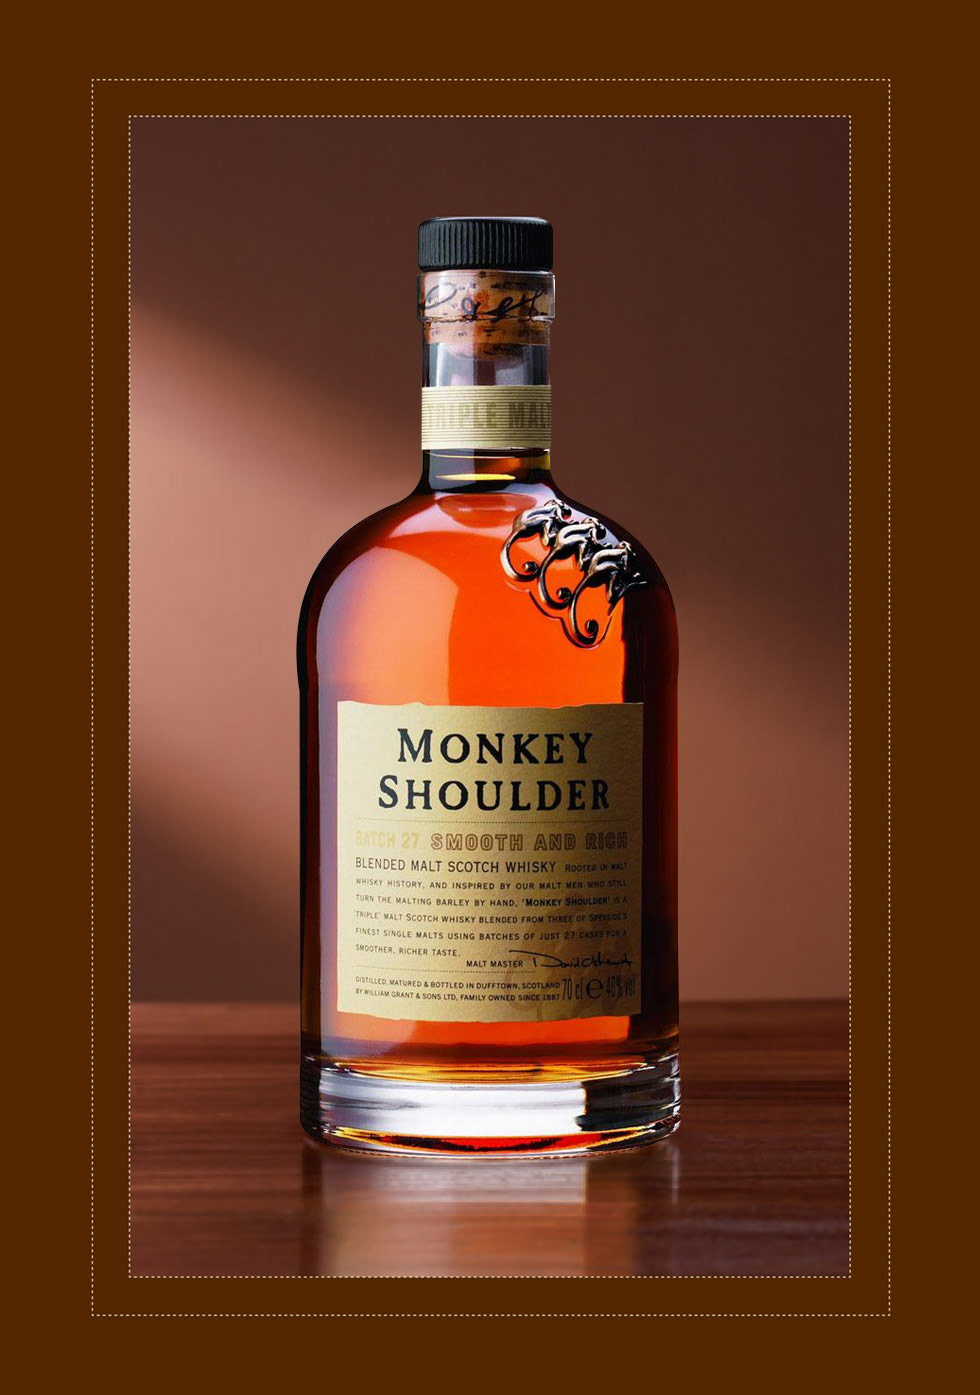 Monkey shoulder